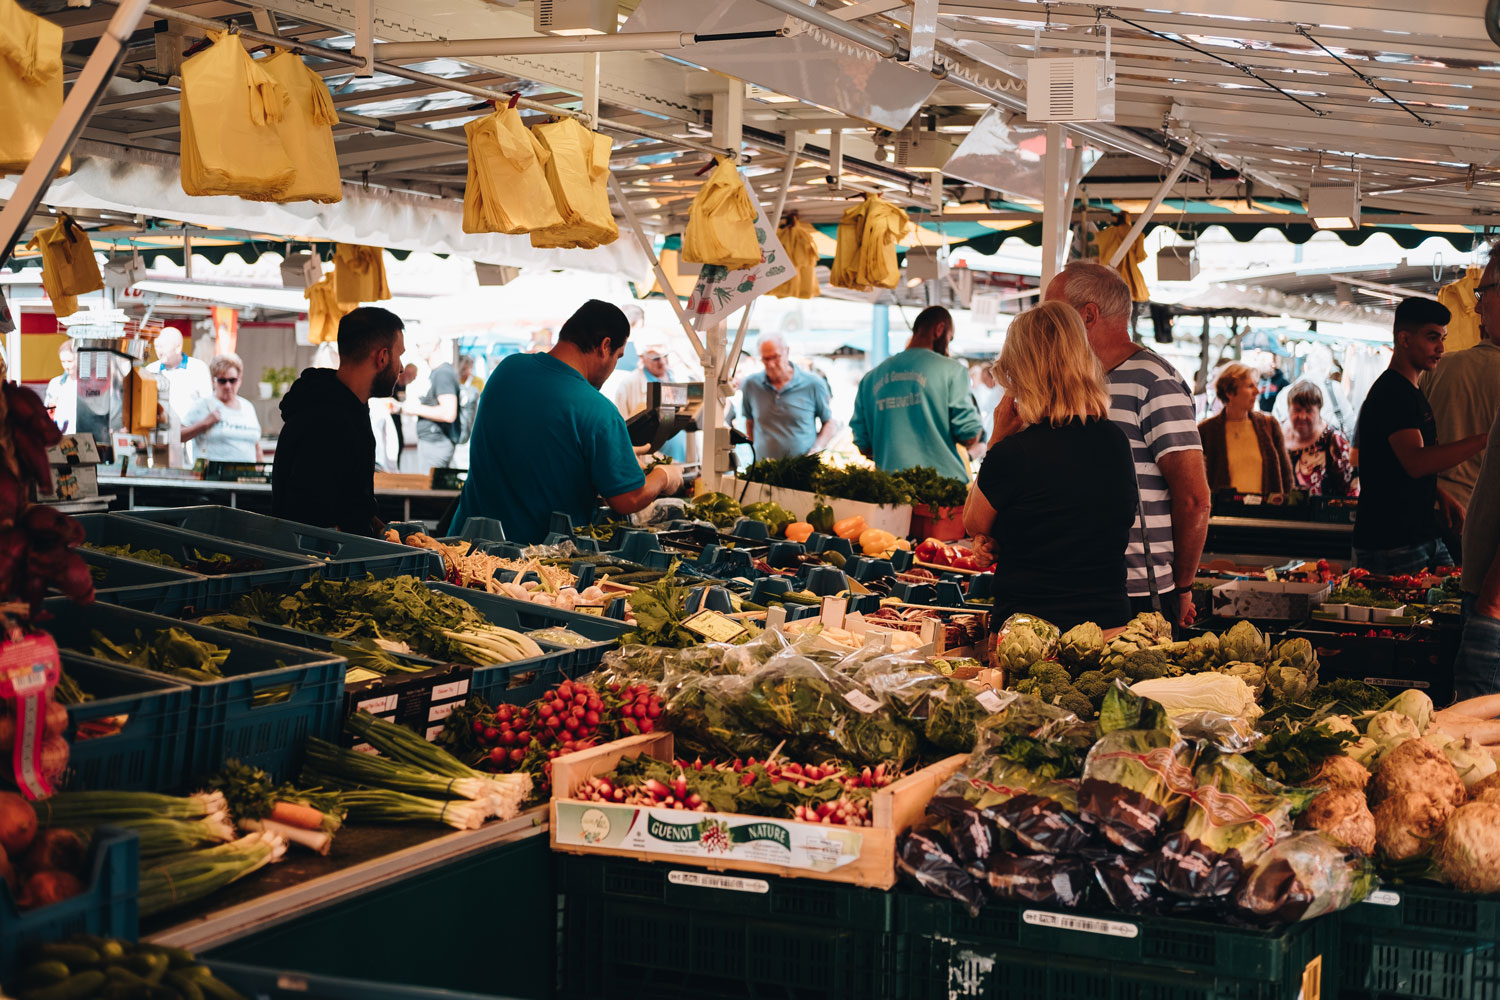 {:gb}A fruit and vegetable stand in a busy market. An employee weighs a bag.{:}{:de}Ein Obst- und Gemüsestand auf einem belebten Markt. Ein Mitarbeiter wiegt eine Tüte ab.{:}